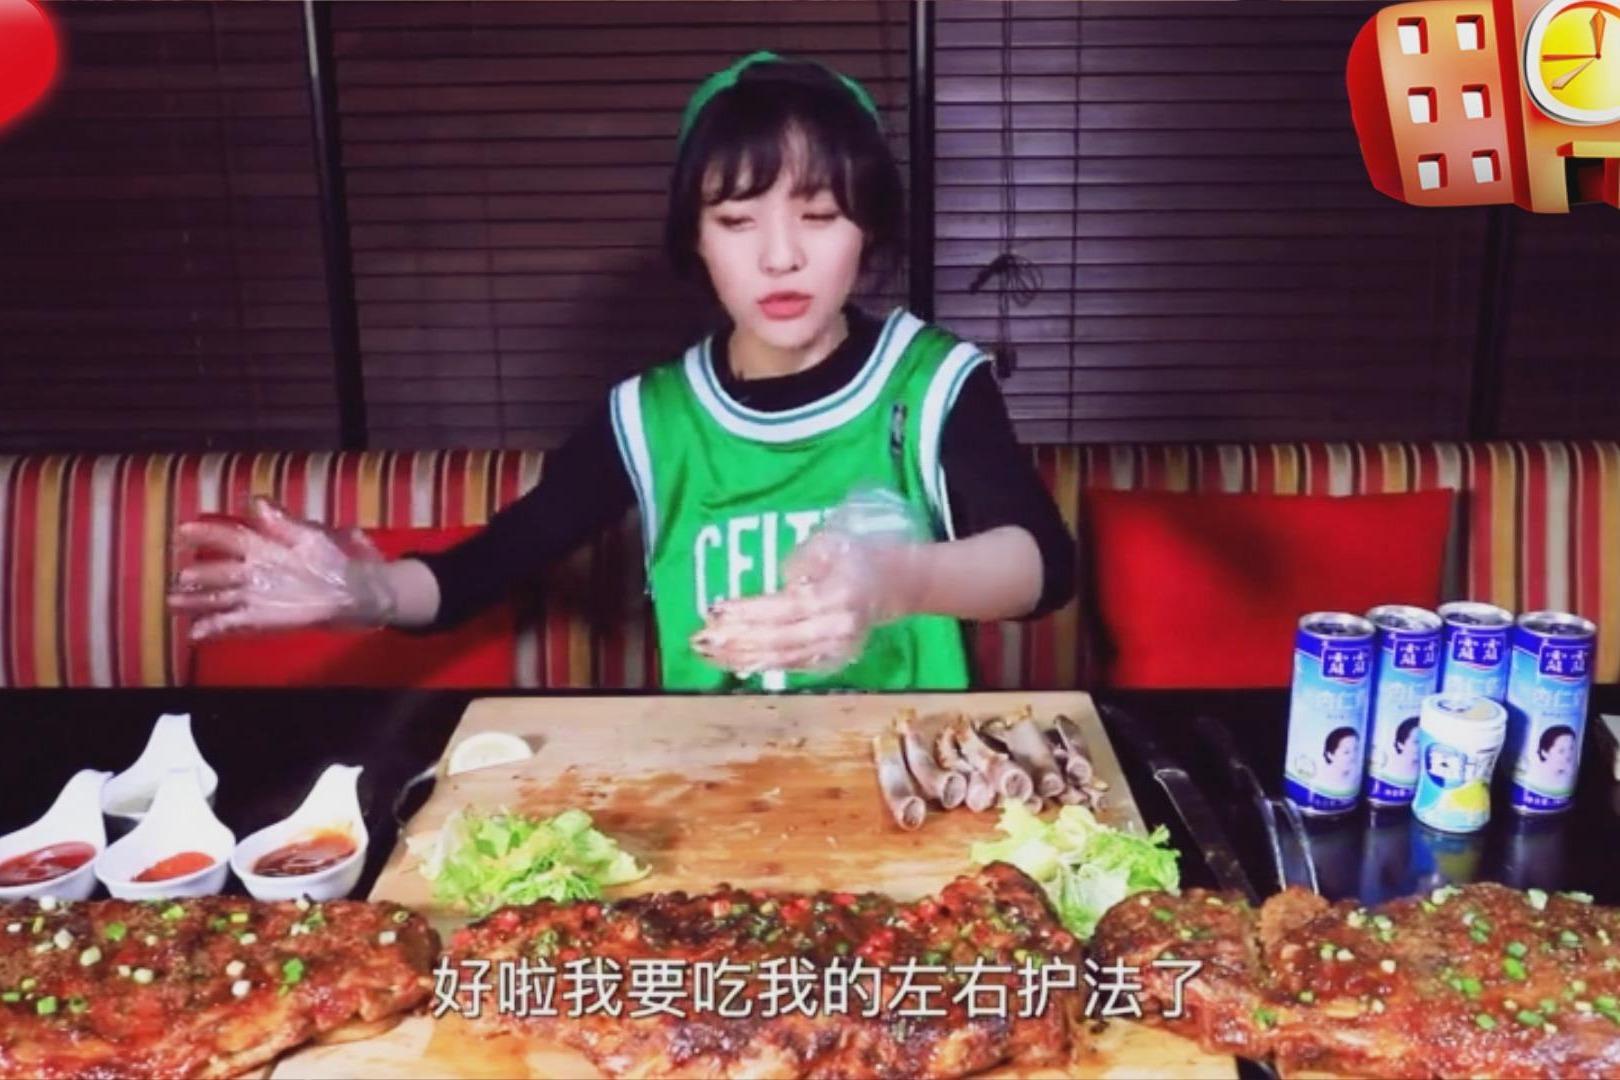 视频:大胃王mini今天扮演篮球少年,吃四扇猪肋排,少年好能吃啊